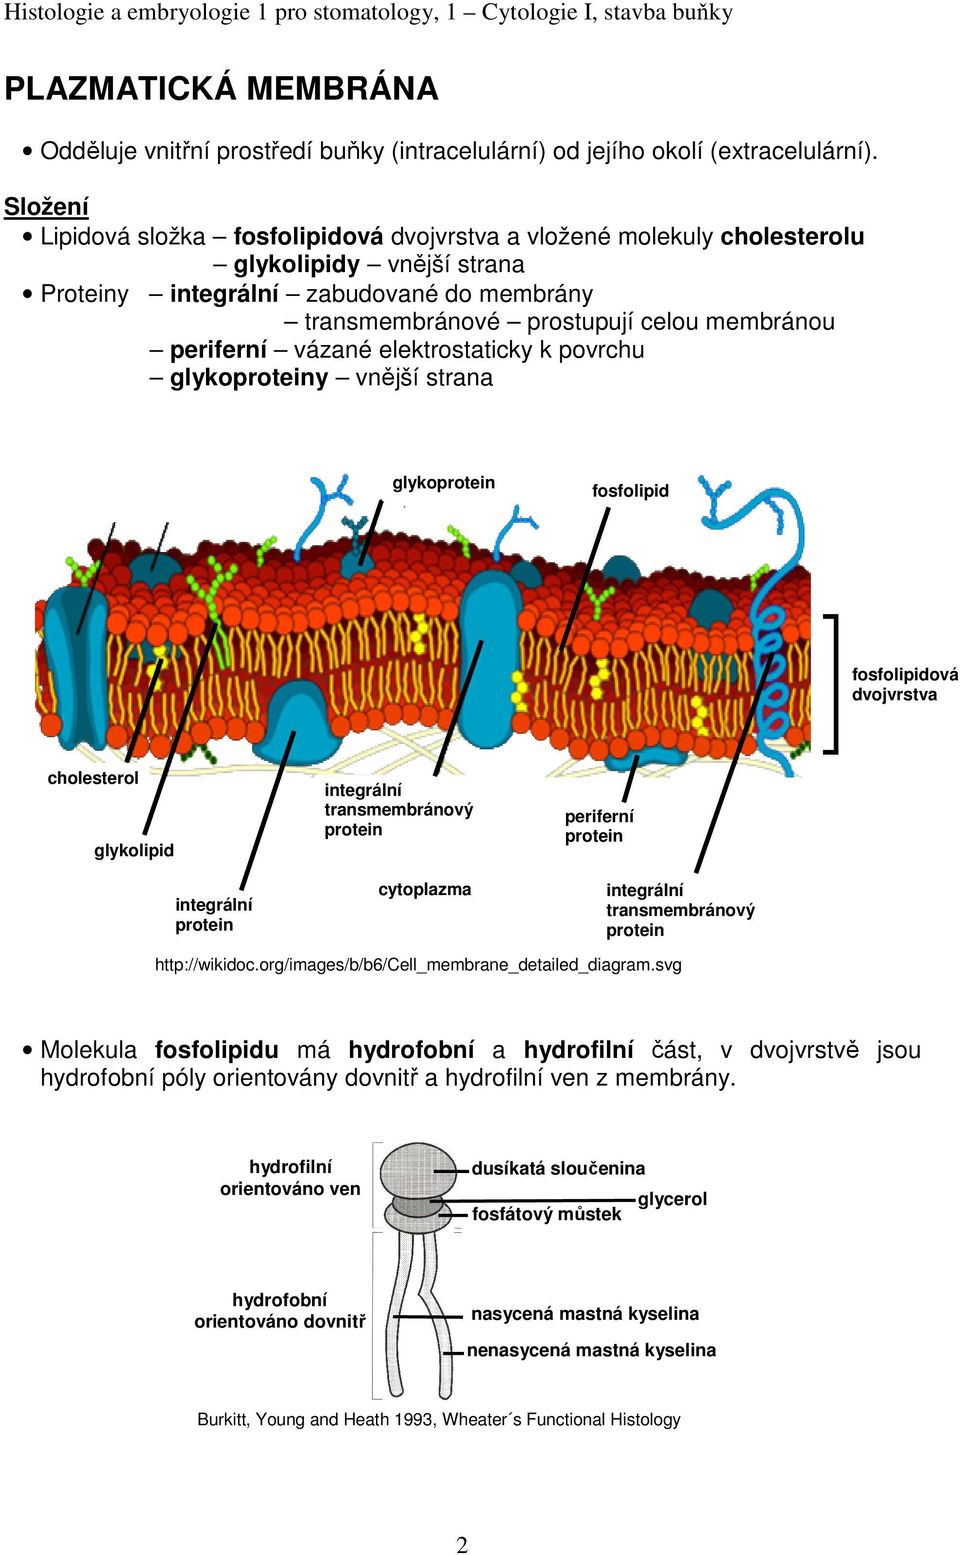 periferní vázané elektrostaticky k povrchu glykoproteiny vnější strana glykoprotein fosfolipid fosfolipidová dvojvrstva cholesterol glykolipid integrální protein integrální transmembránový protein